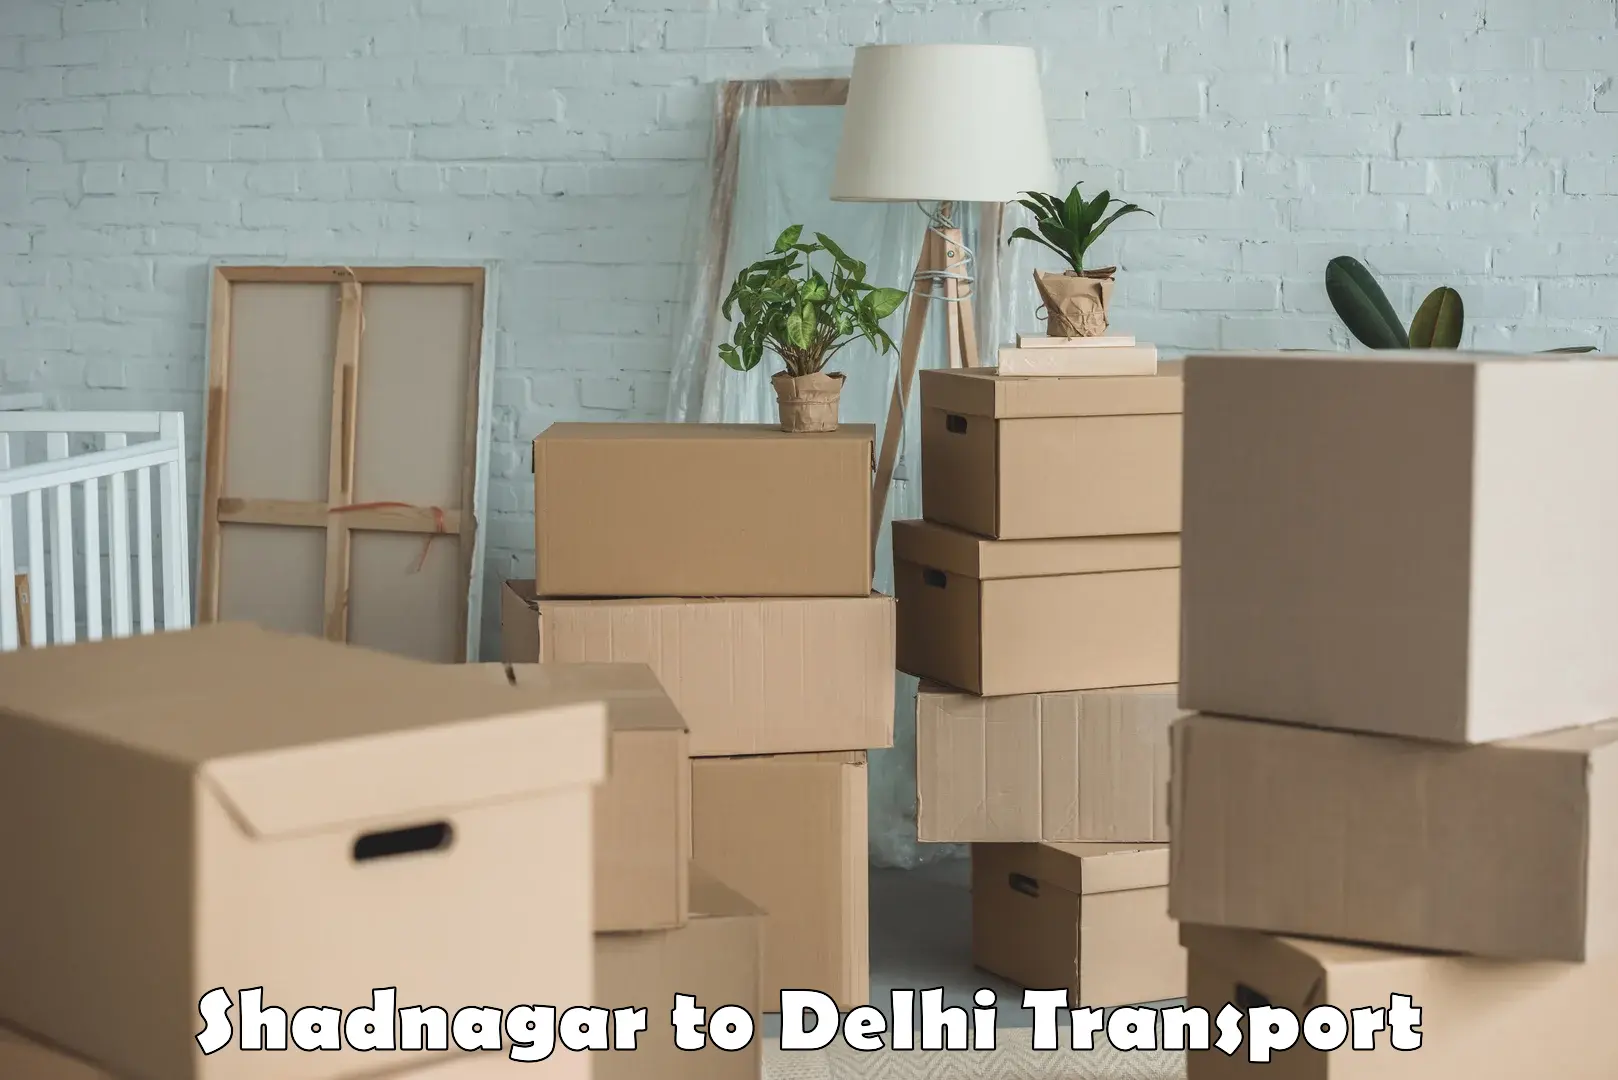 Pick up transport service Shadnagar to Delhi